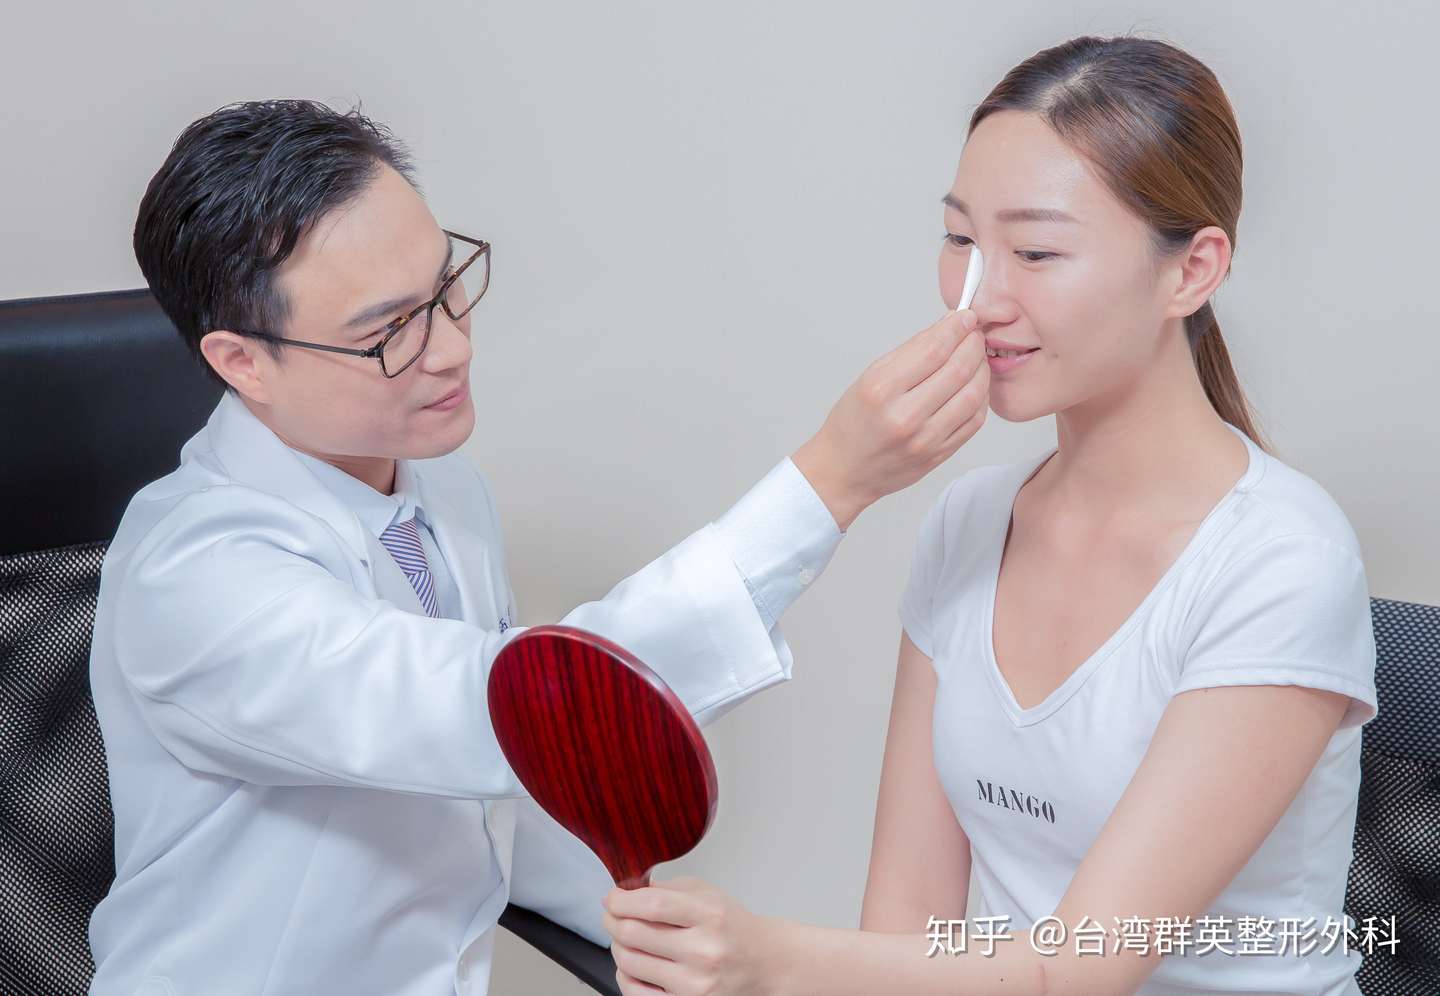 韩式 日式 台式 隆鼻手术也混血 谈隆鼻手术 苏毓彬医师 台湾群英整形 知乎